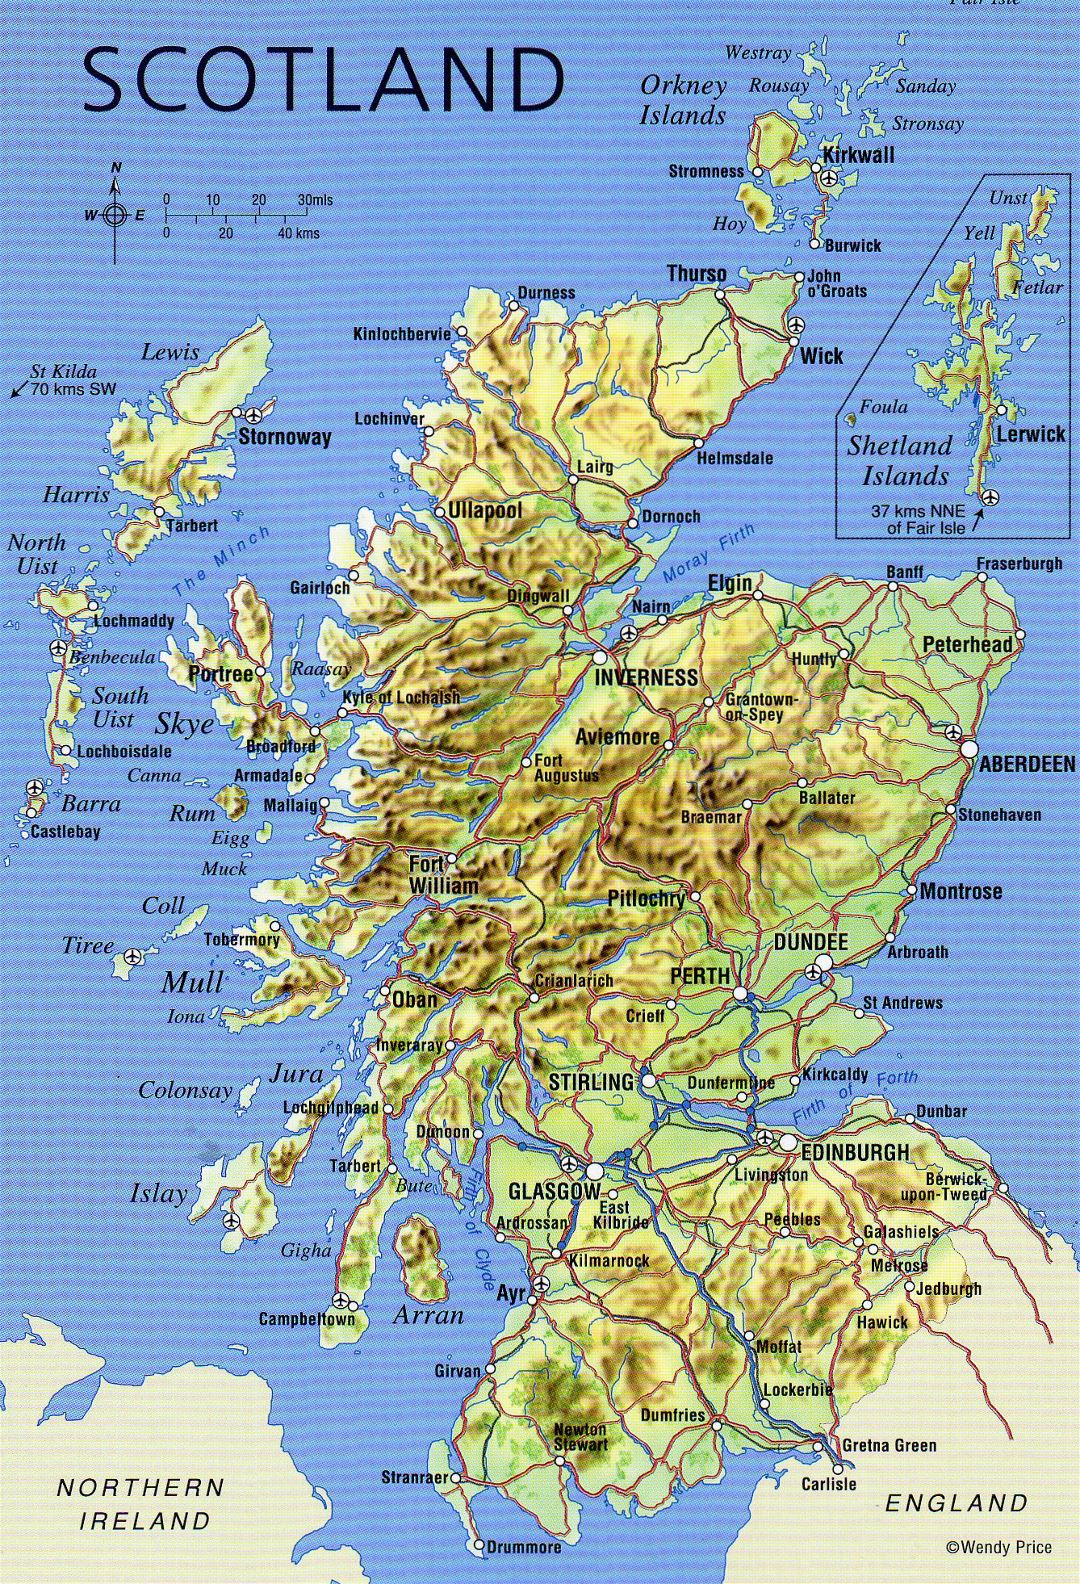 Grande detallado mapa de Escocia con relieve, carreteras, principales ciudades y aeropuertos